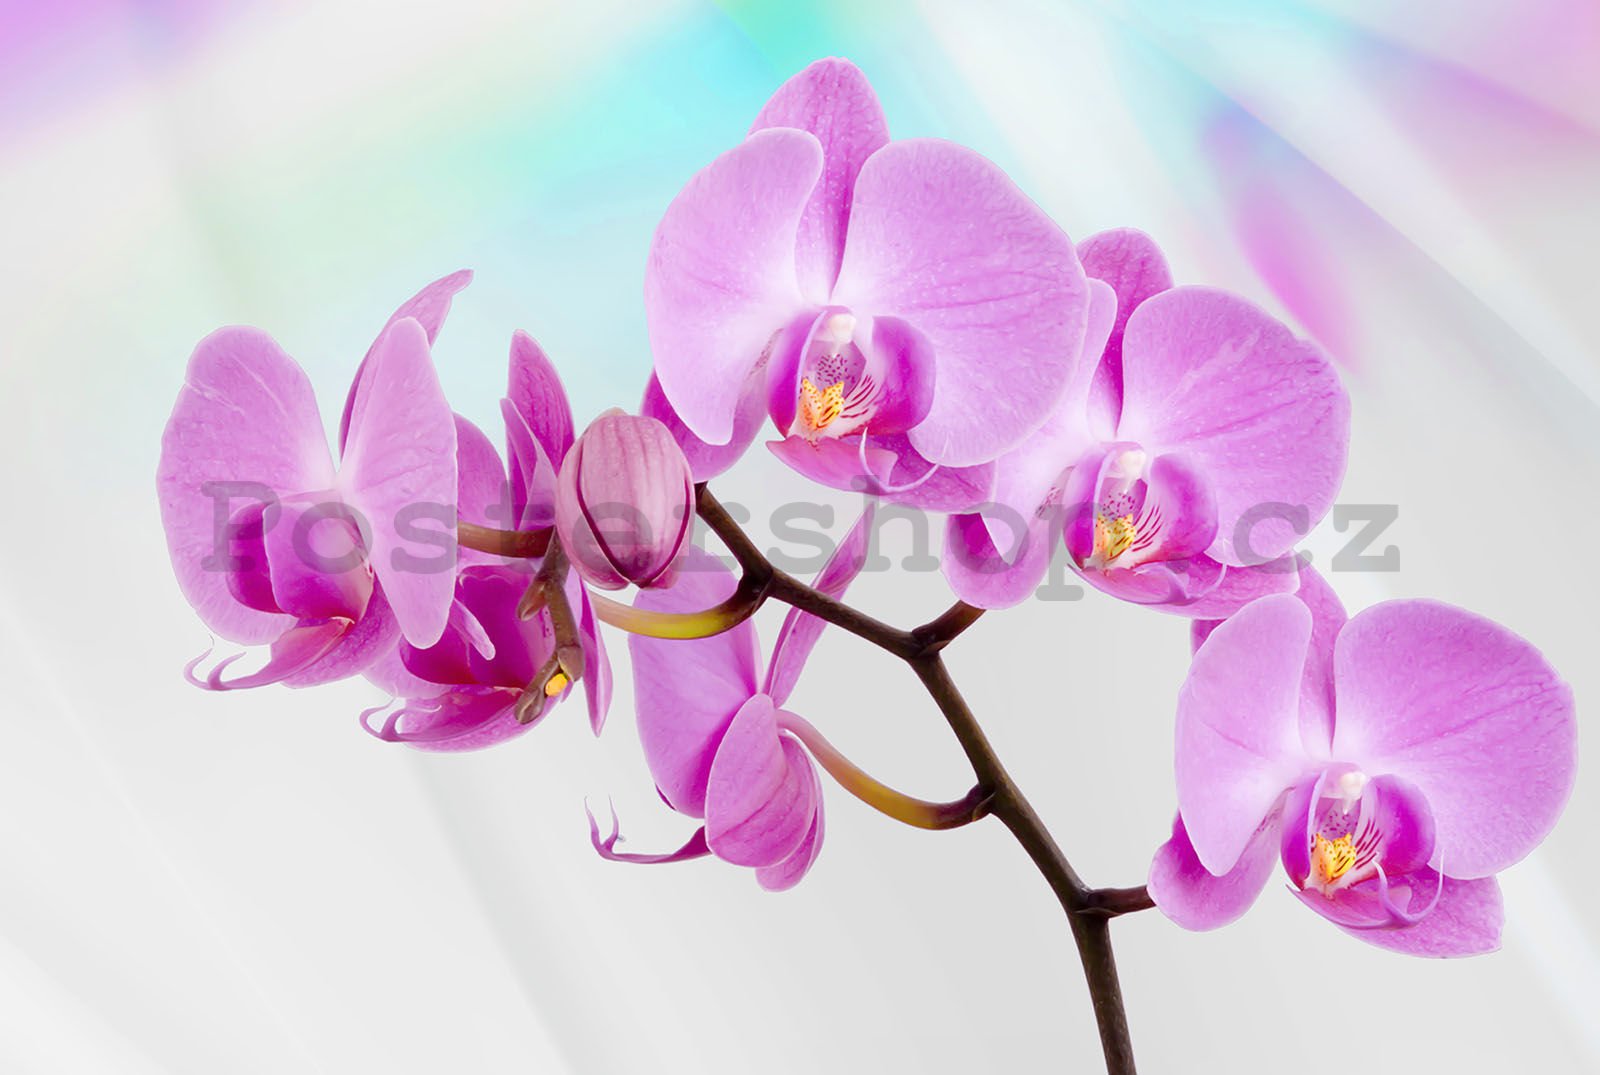 Fototapeta vliesová: Fialová Orchidea - 416x254 cm